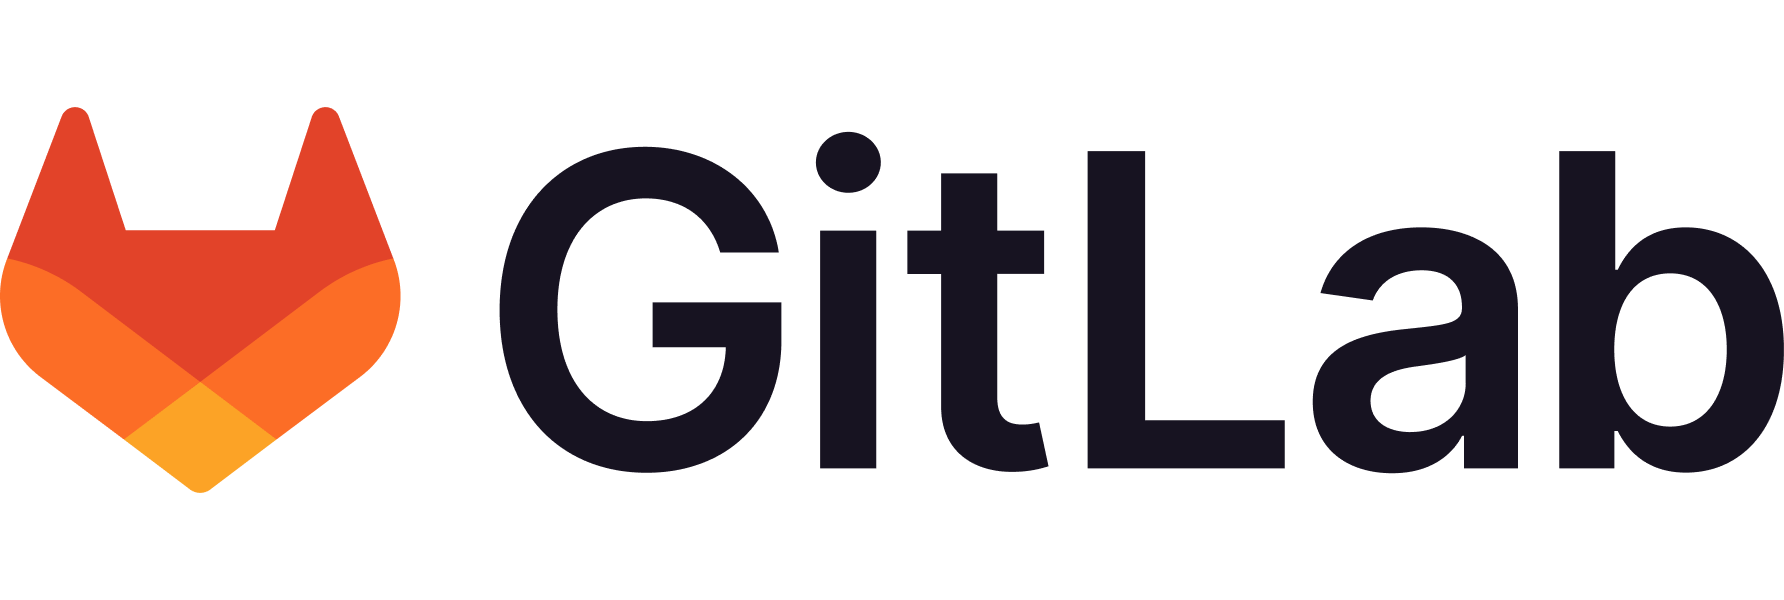 Gitlab Conference Sponsor